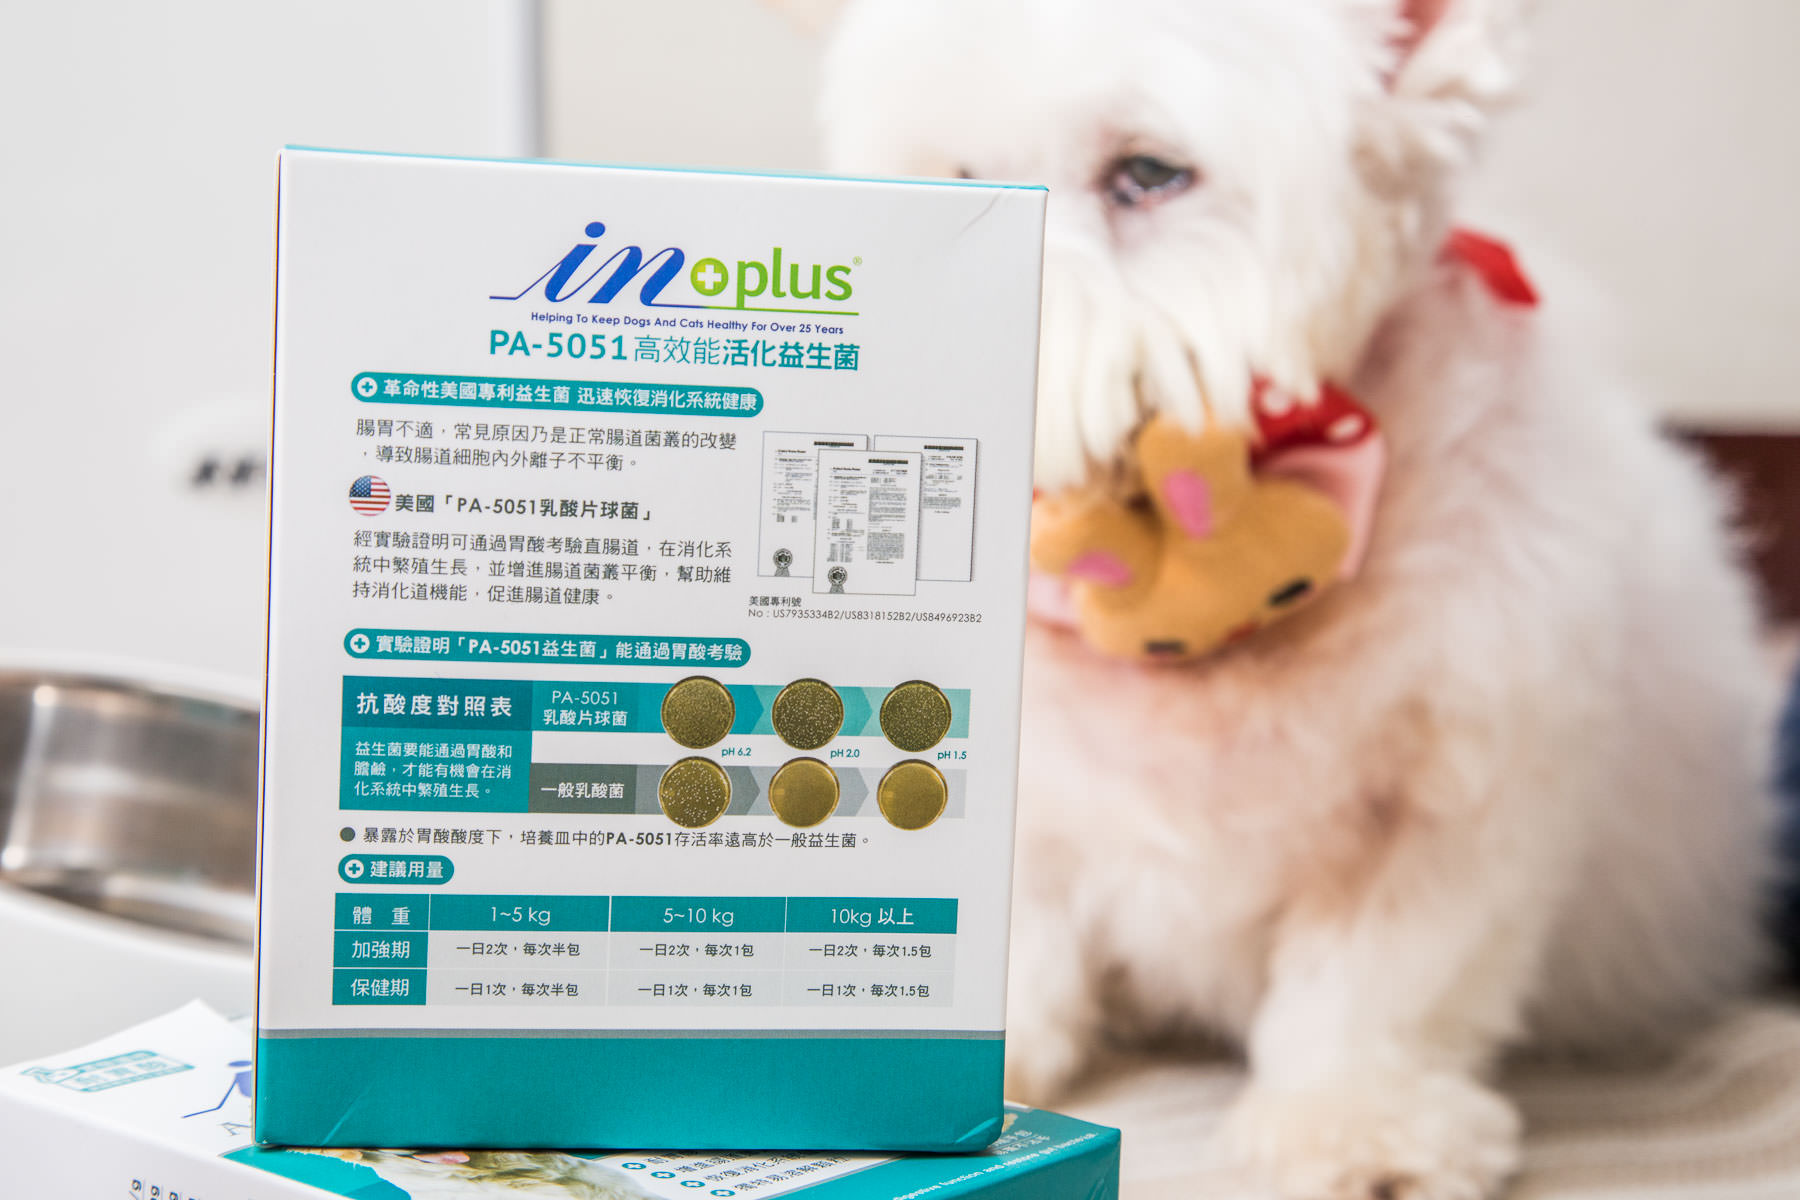 寵物益生菌品牌,狗益生菌,IN-Plus 腸胃保健-PA-5051高效能活化益生菌,寵物保健品,益生菌,寵物益生菌